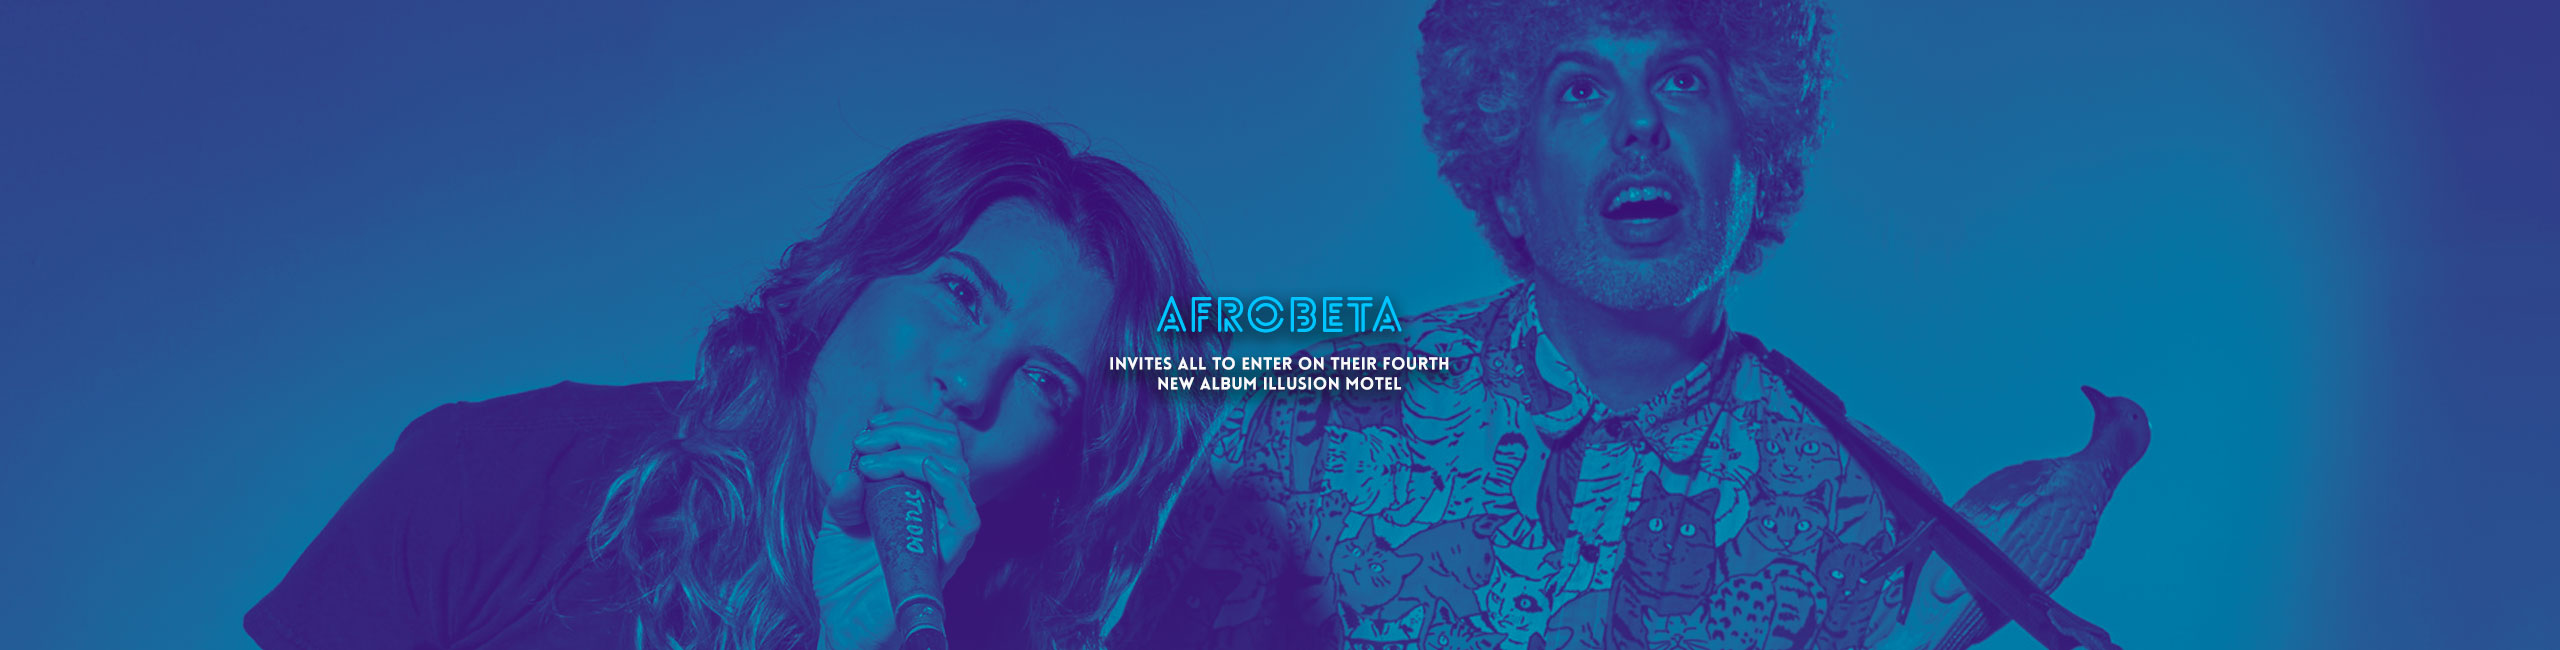 Afrobeta: Invites All to Enter on Their Fourth New Album Illusion Motel